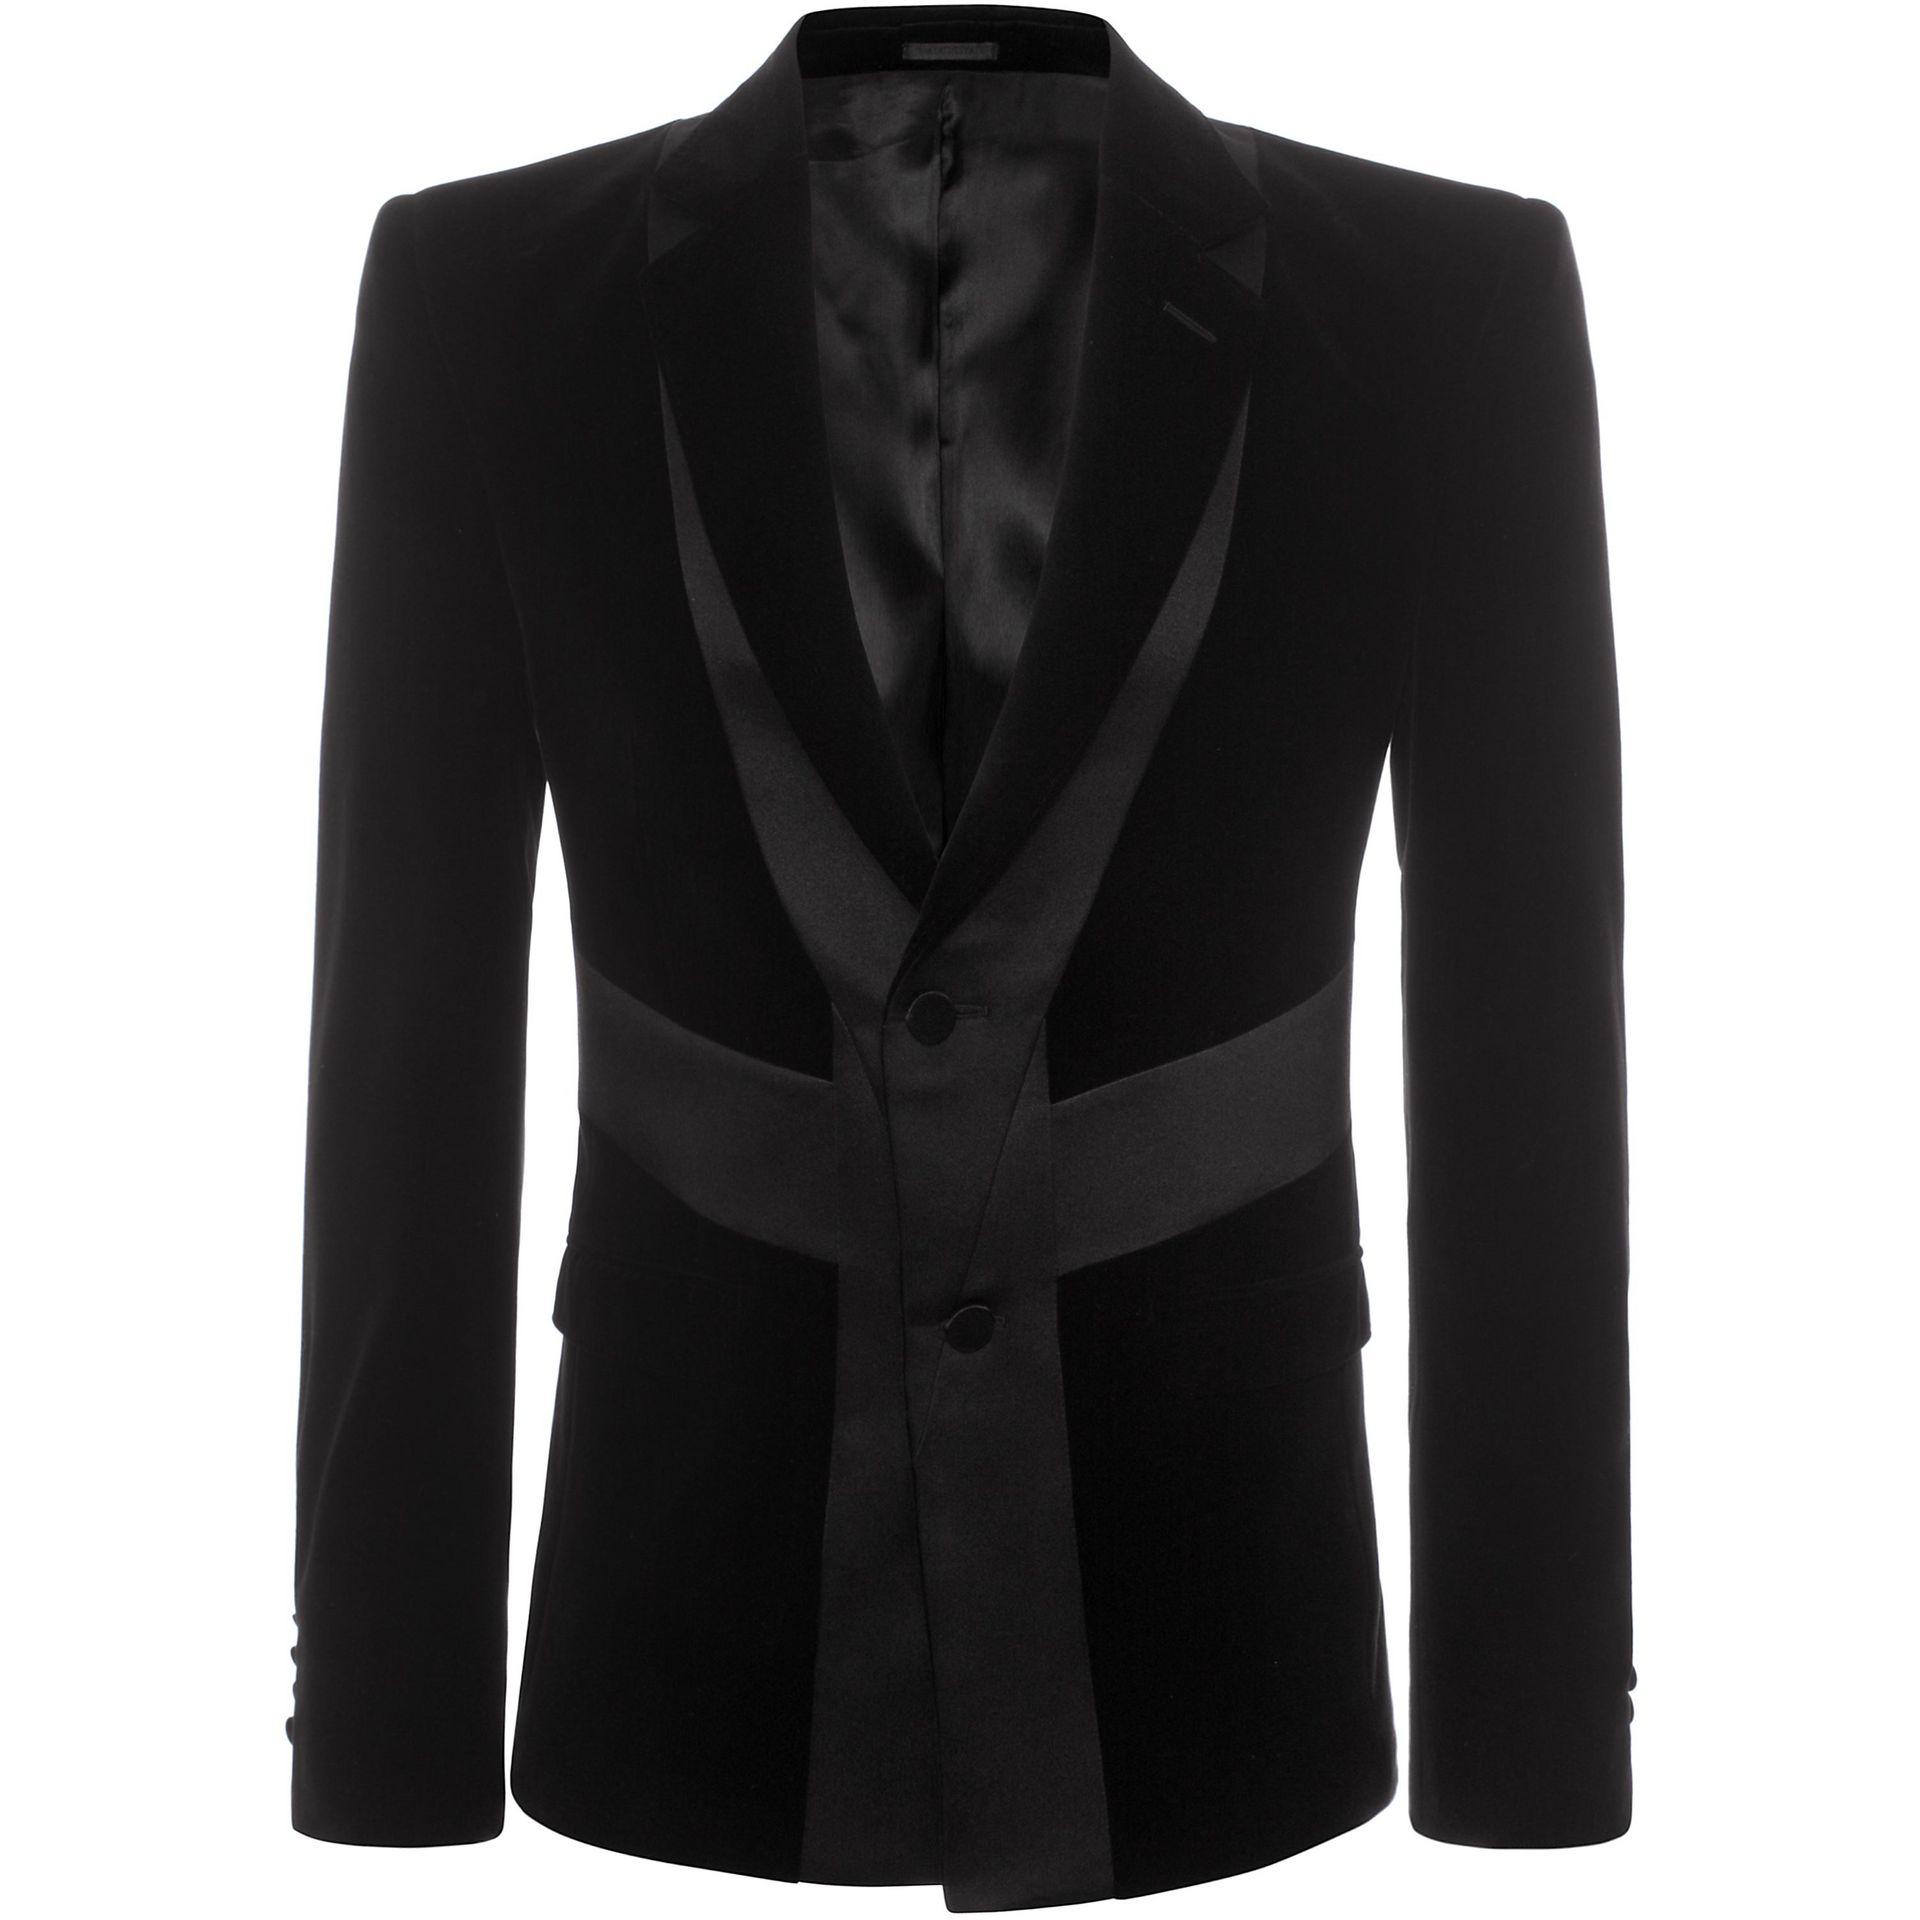 Lyst - Alexander Mcqueen Tuxedo Jacket in Black for Men